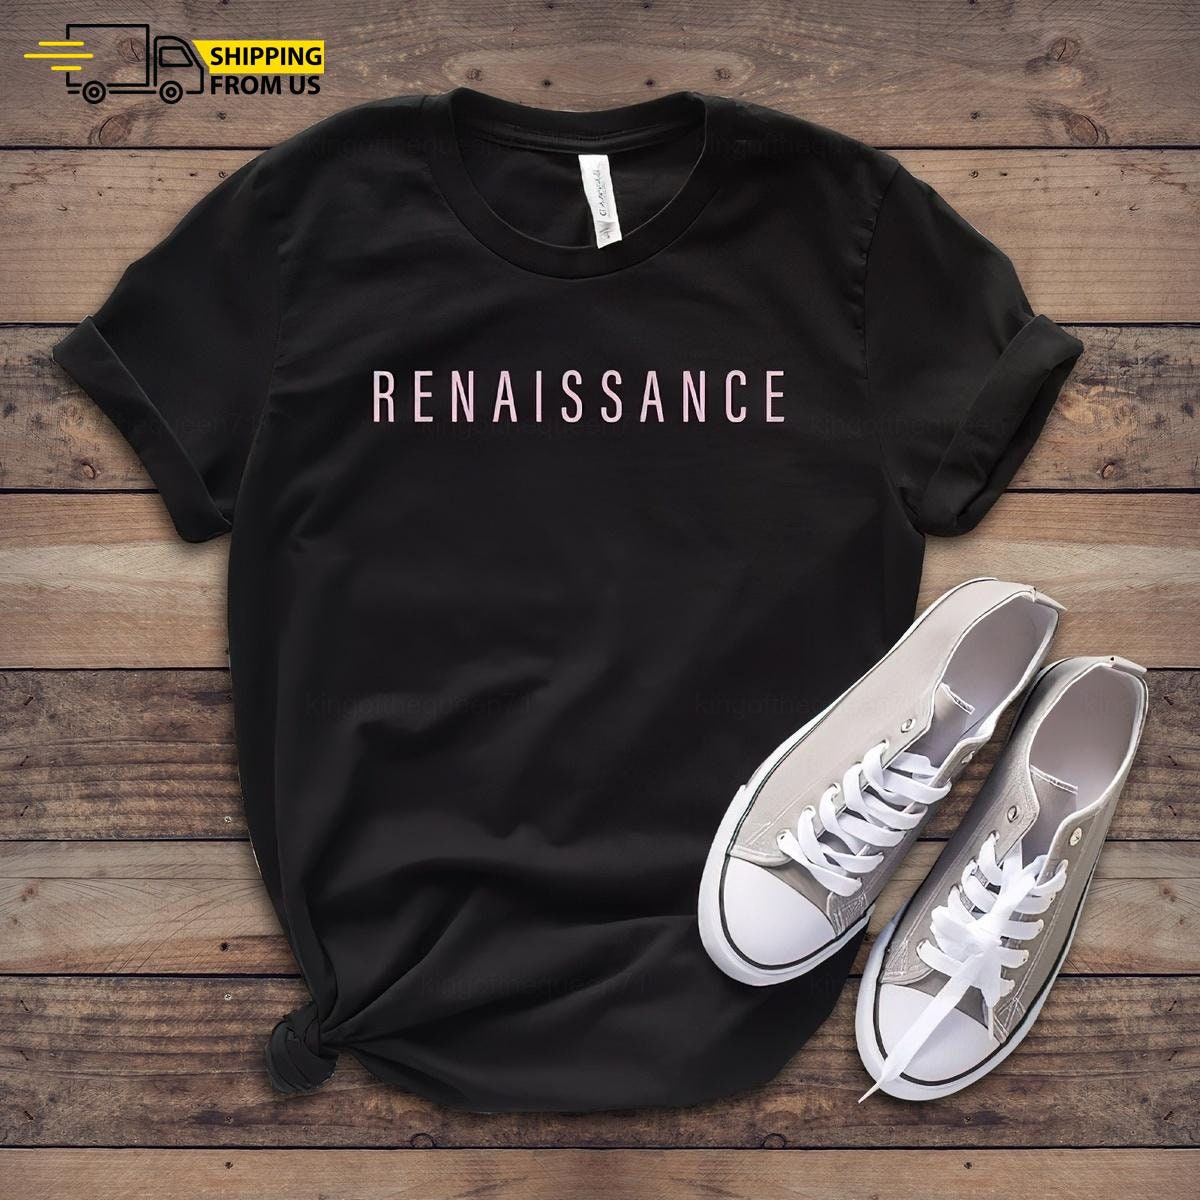 Discover Renaissance Tour T-shirt, Beyonc Tour, Renaissance